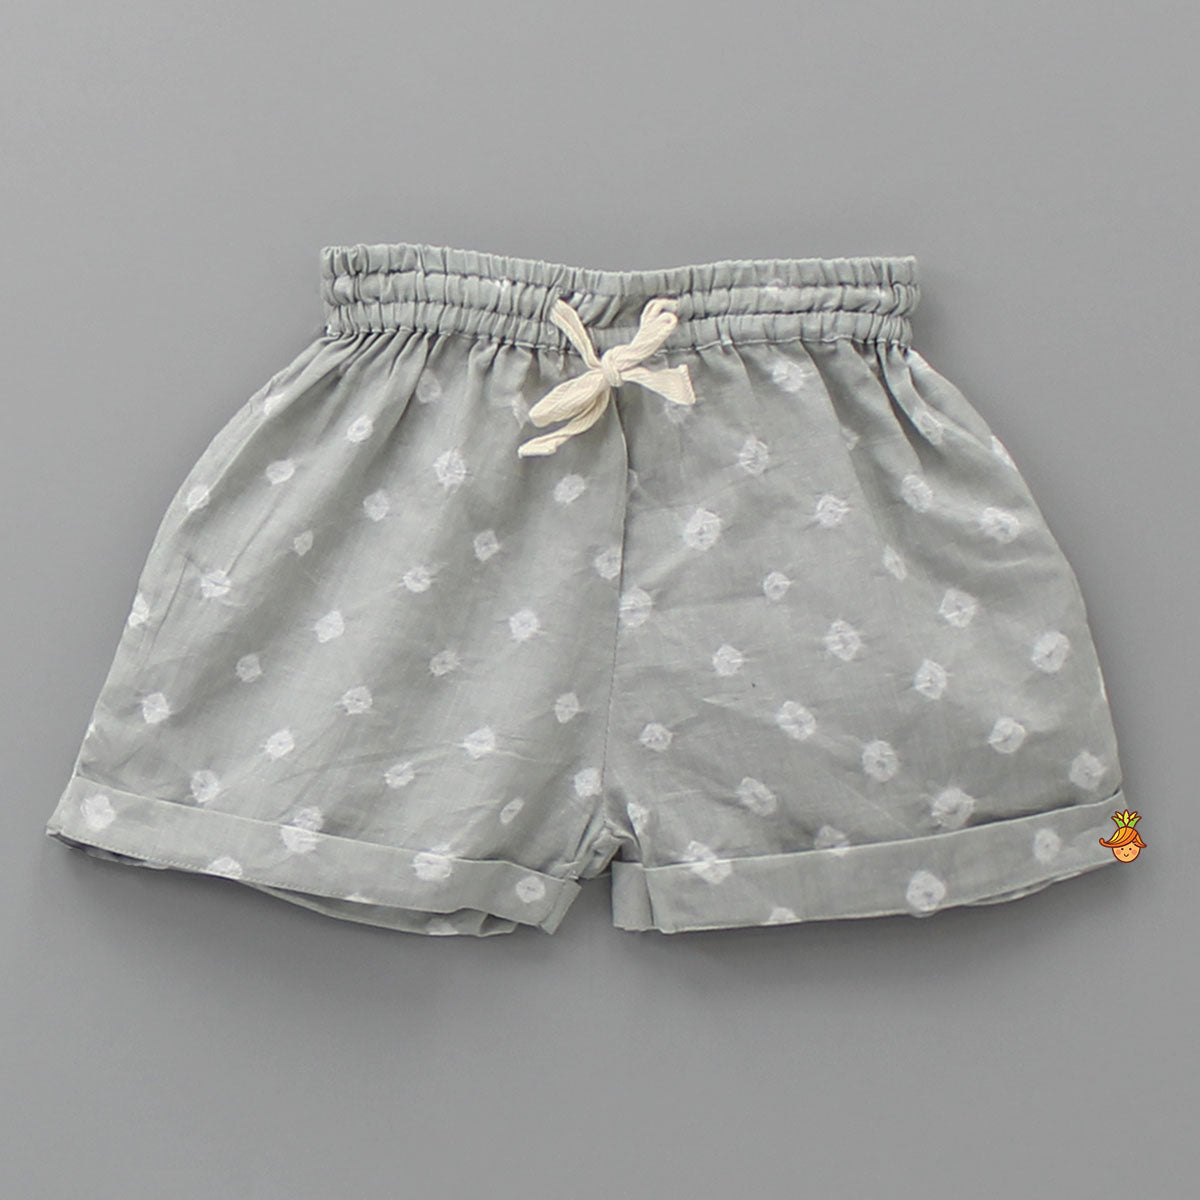 Printed Grey Bandhani Top And Shorts